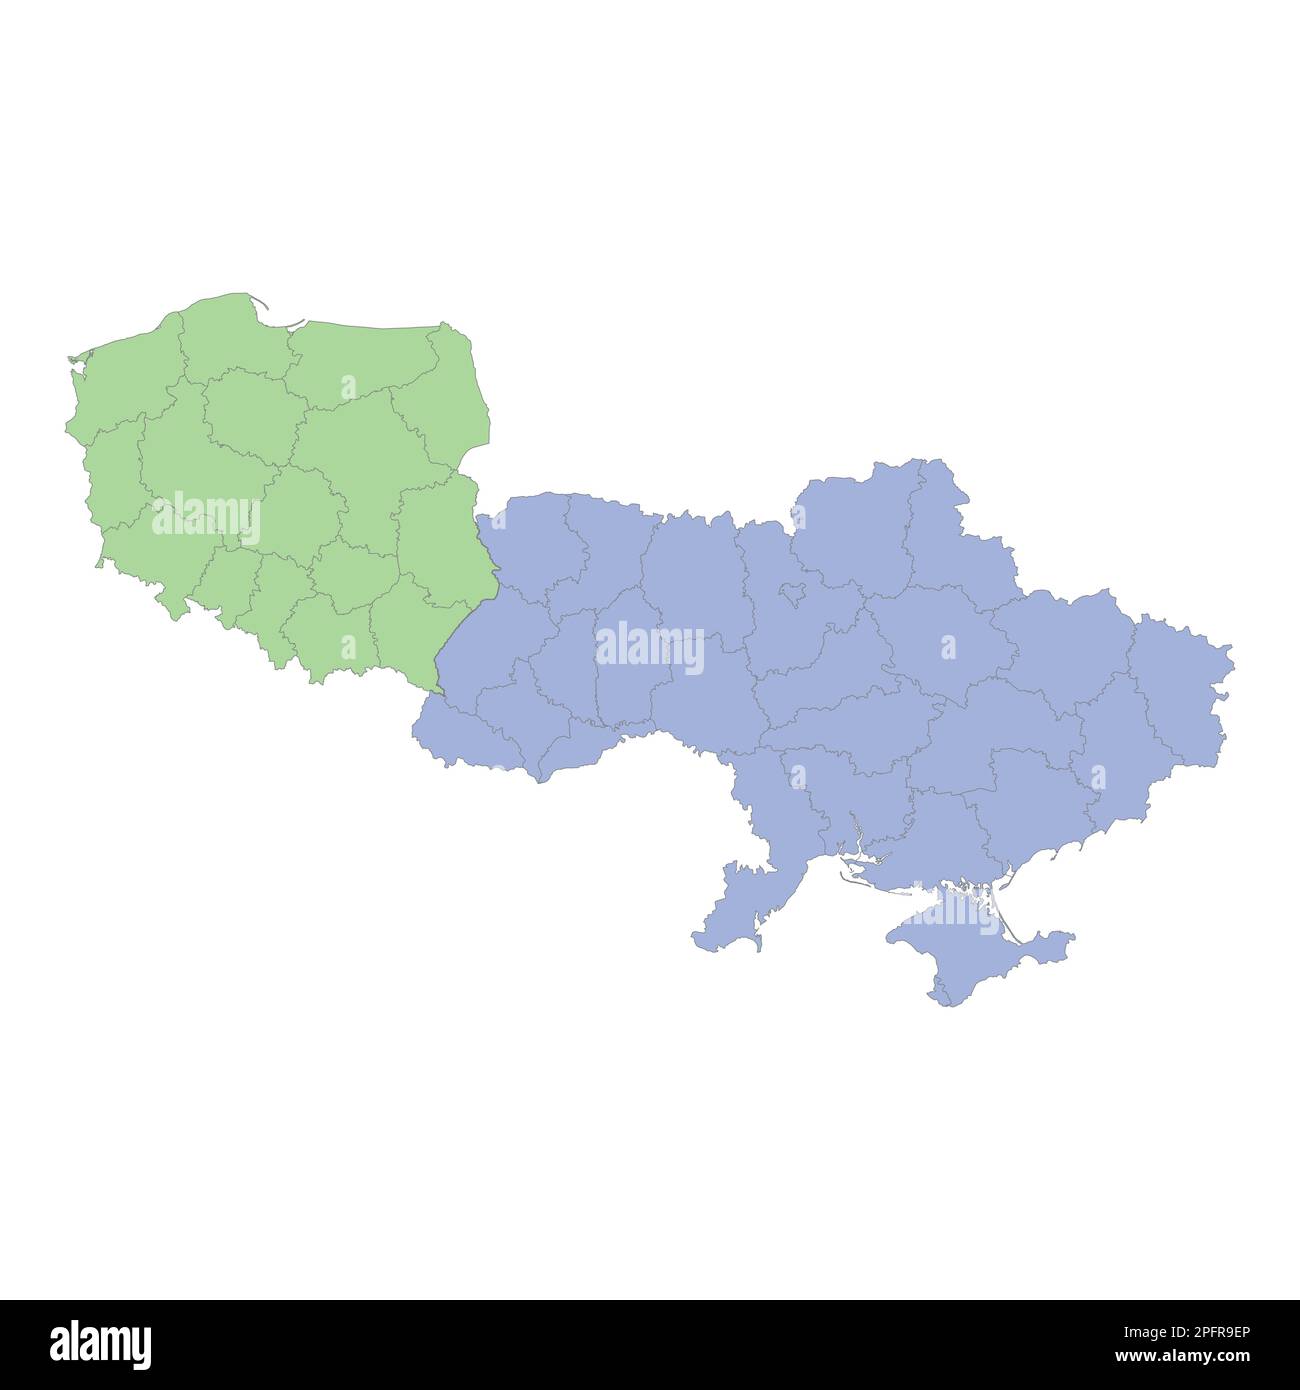 Mappa politica di alta qualità della Polonia e dell'Ucraina con i confini delle regioni o province. Illustrazione vettoriale Illustrazione Vettoriale